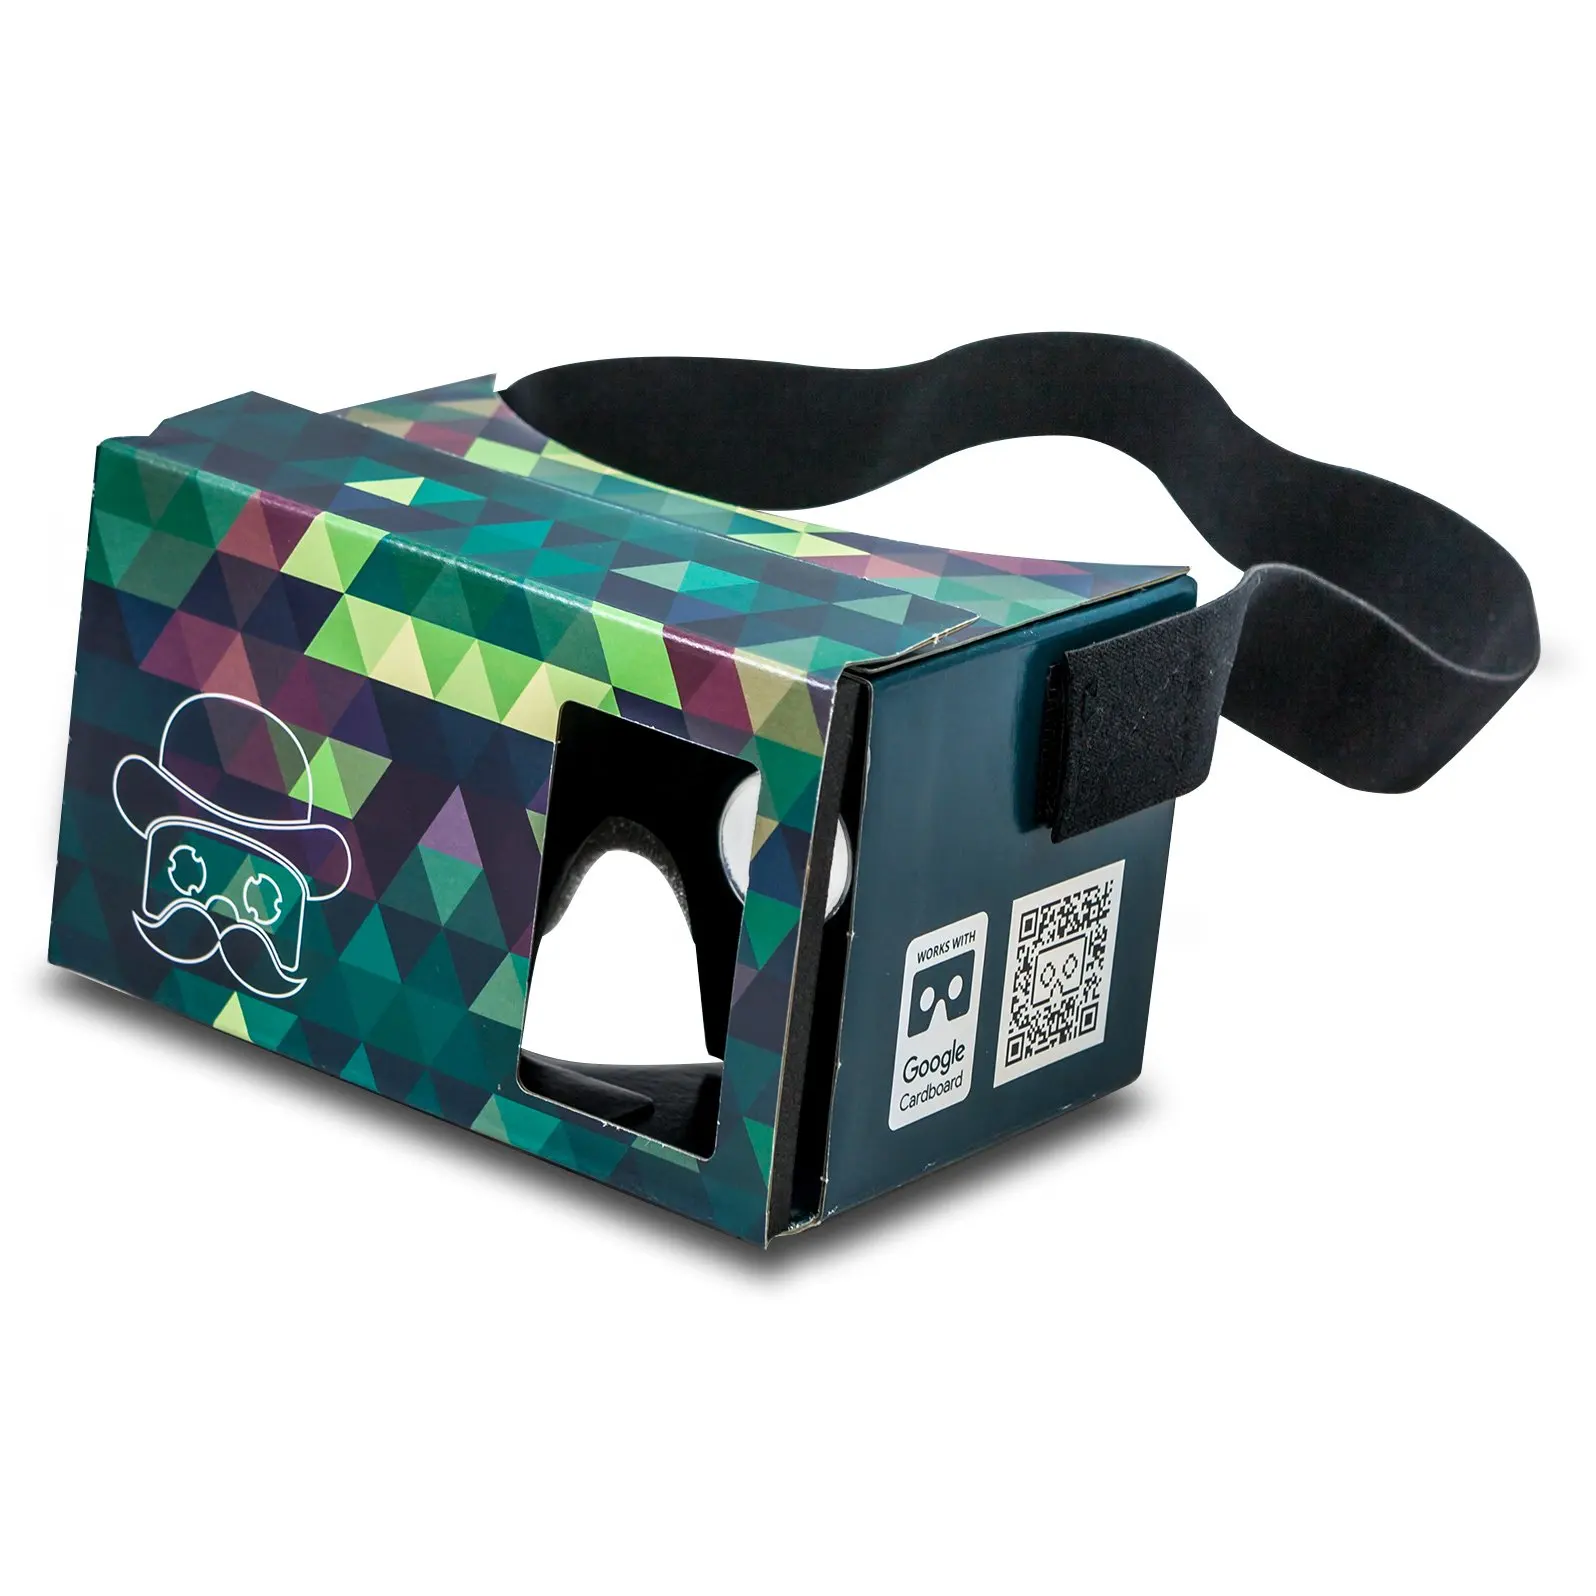 Д очки для телефона. Google VR очки. Очки Google Cardboard. Google Cardboard VR. VR очки Amazon.